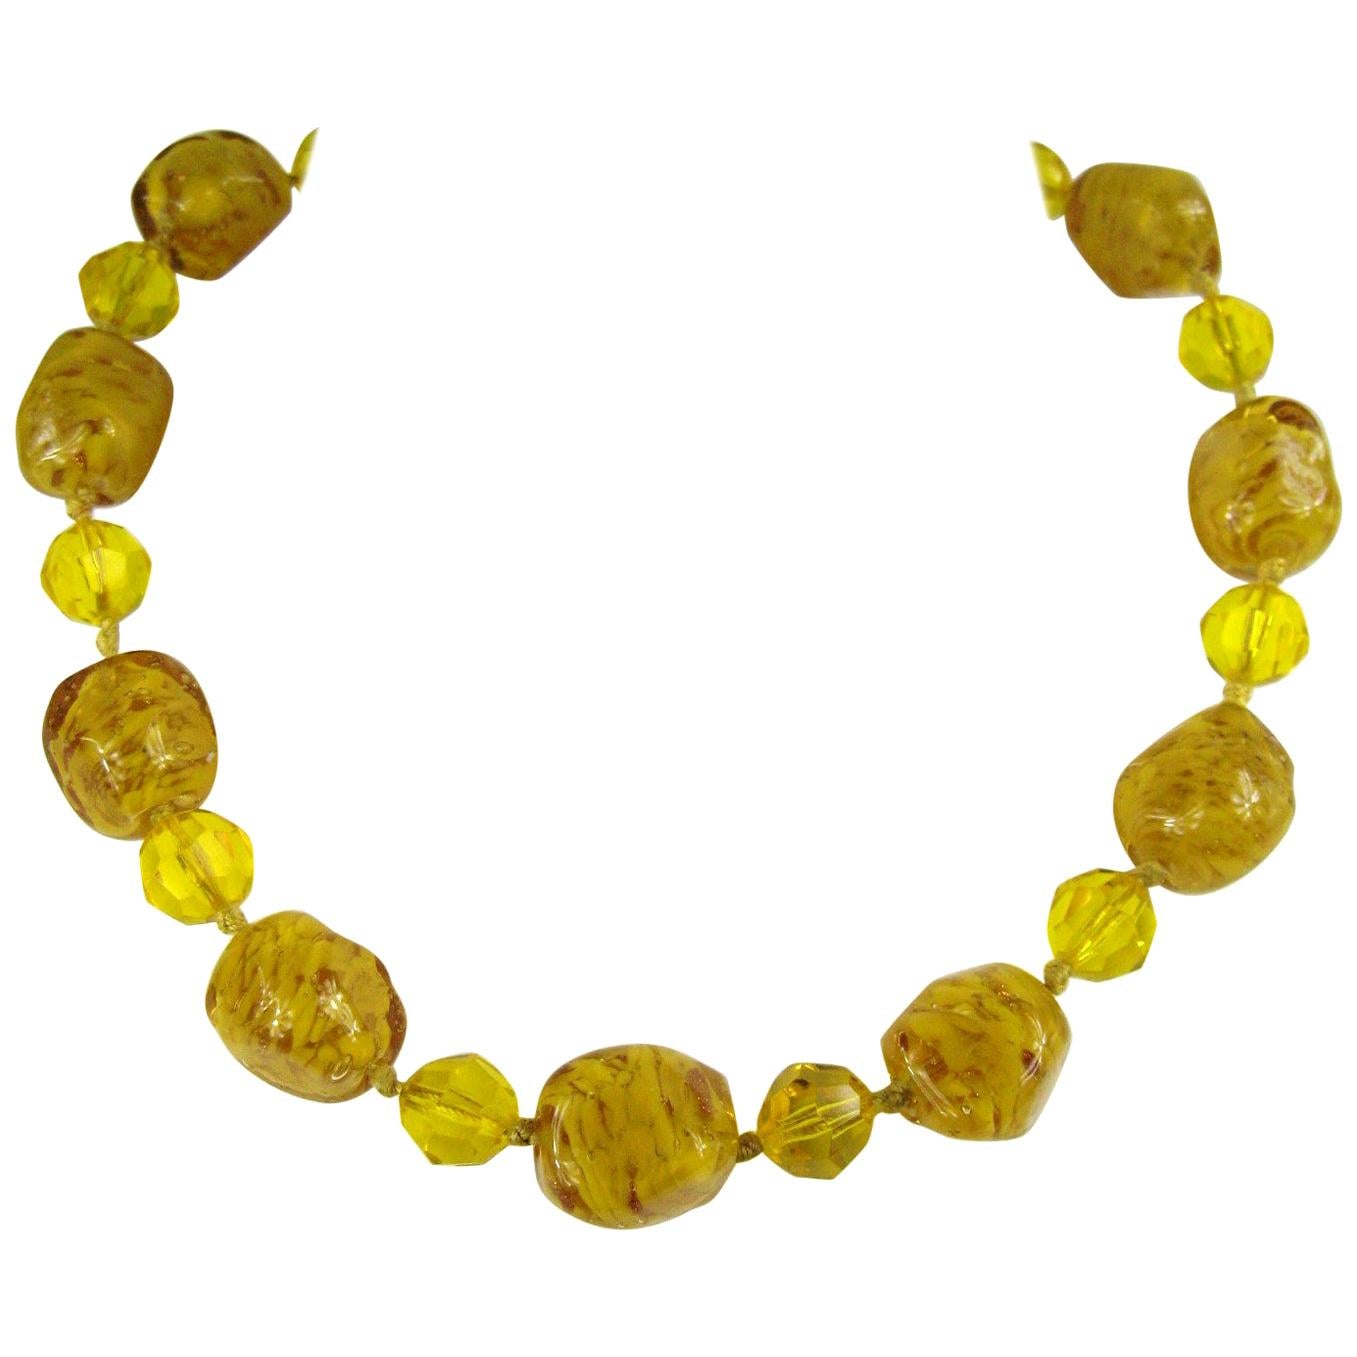 Venetian Art Gold Foil Glass Bead Necklace 1940s Vintage 14K GF For Sale